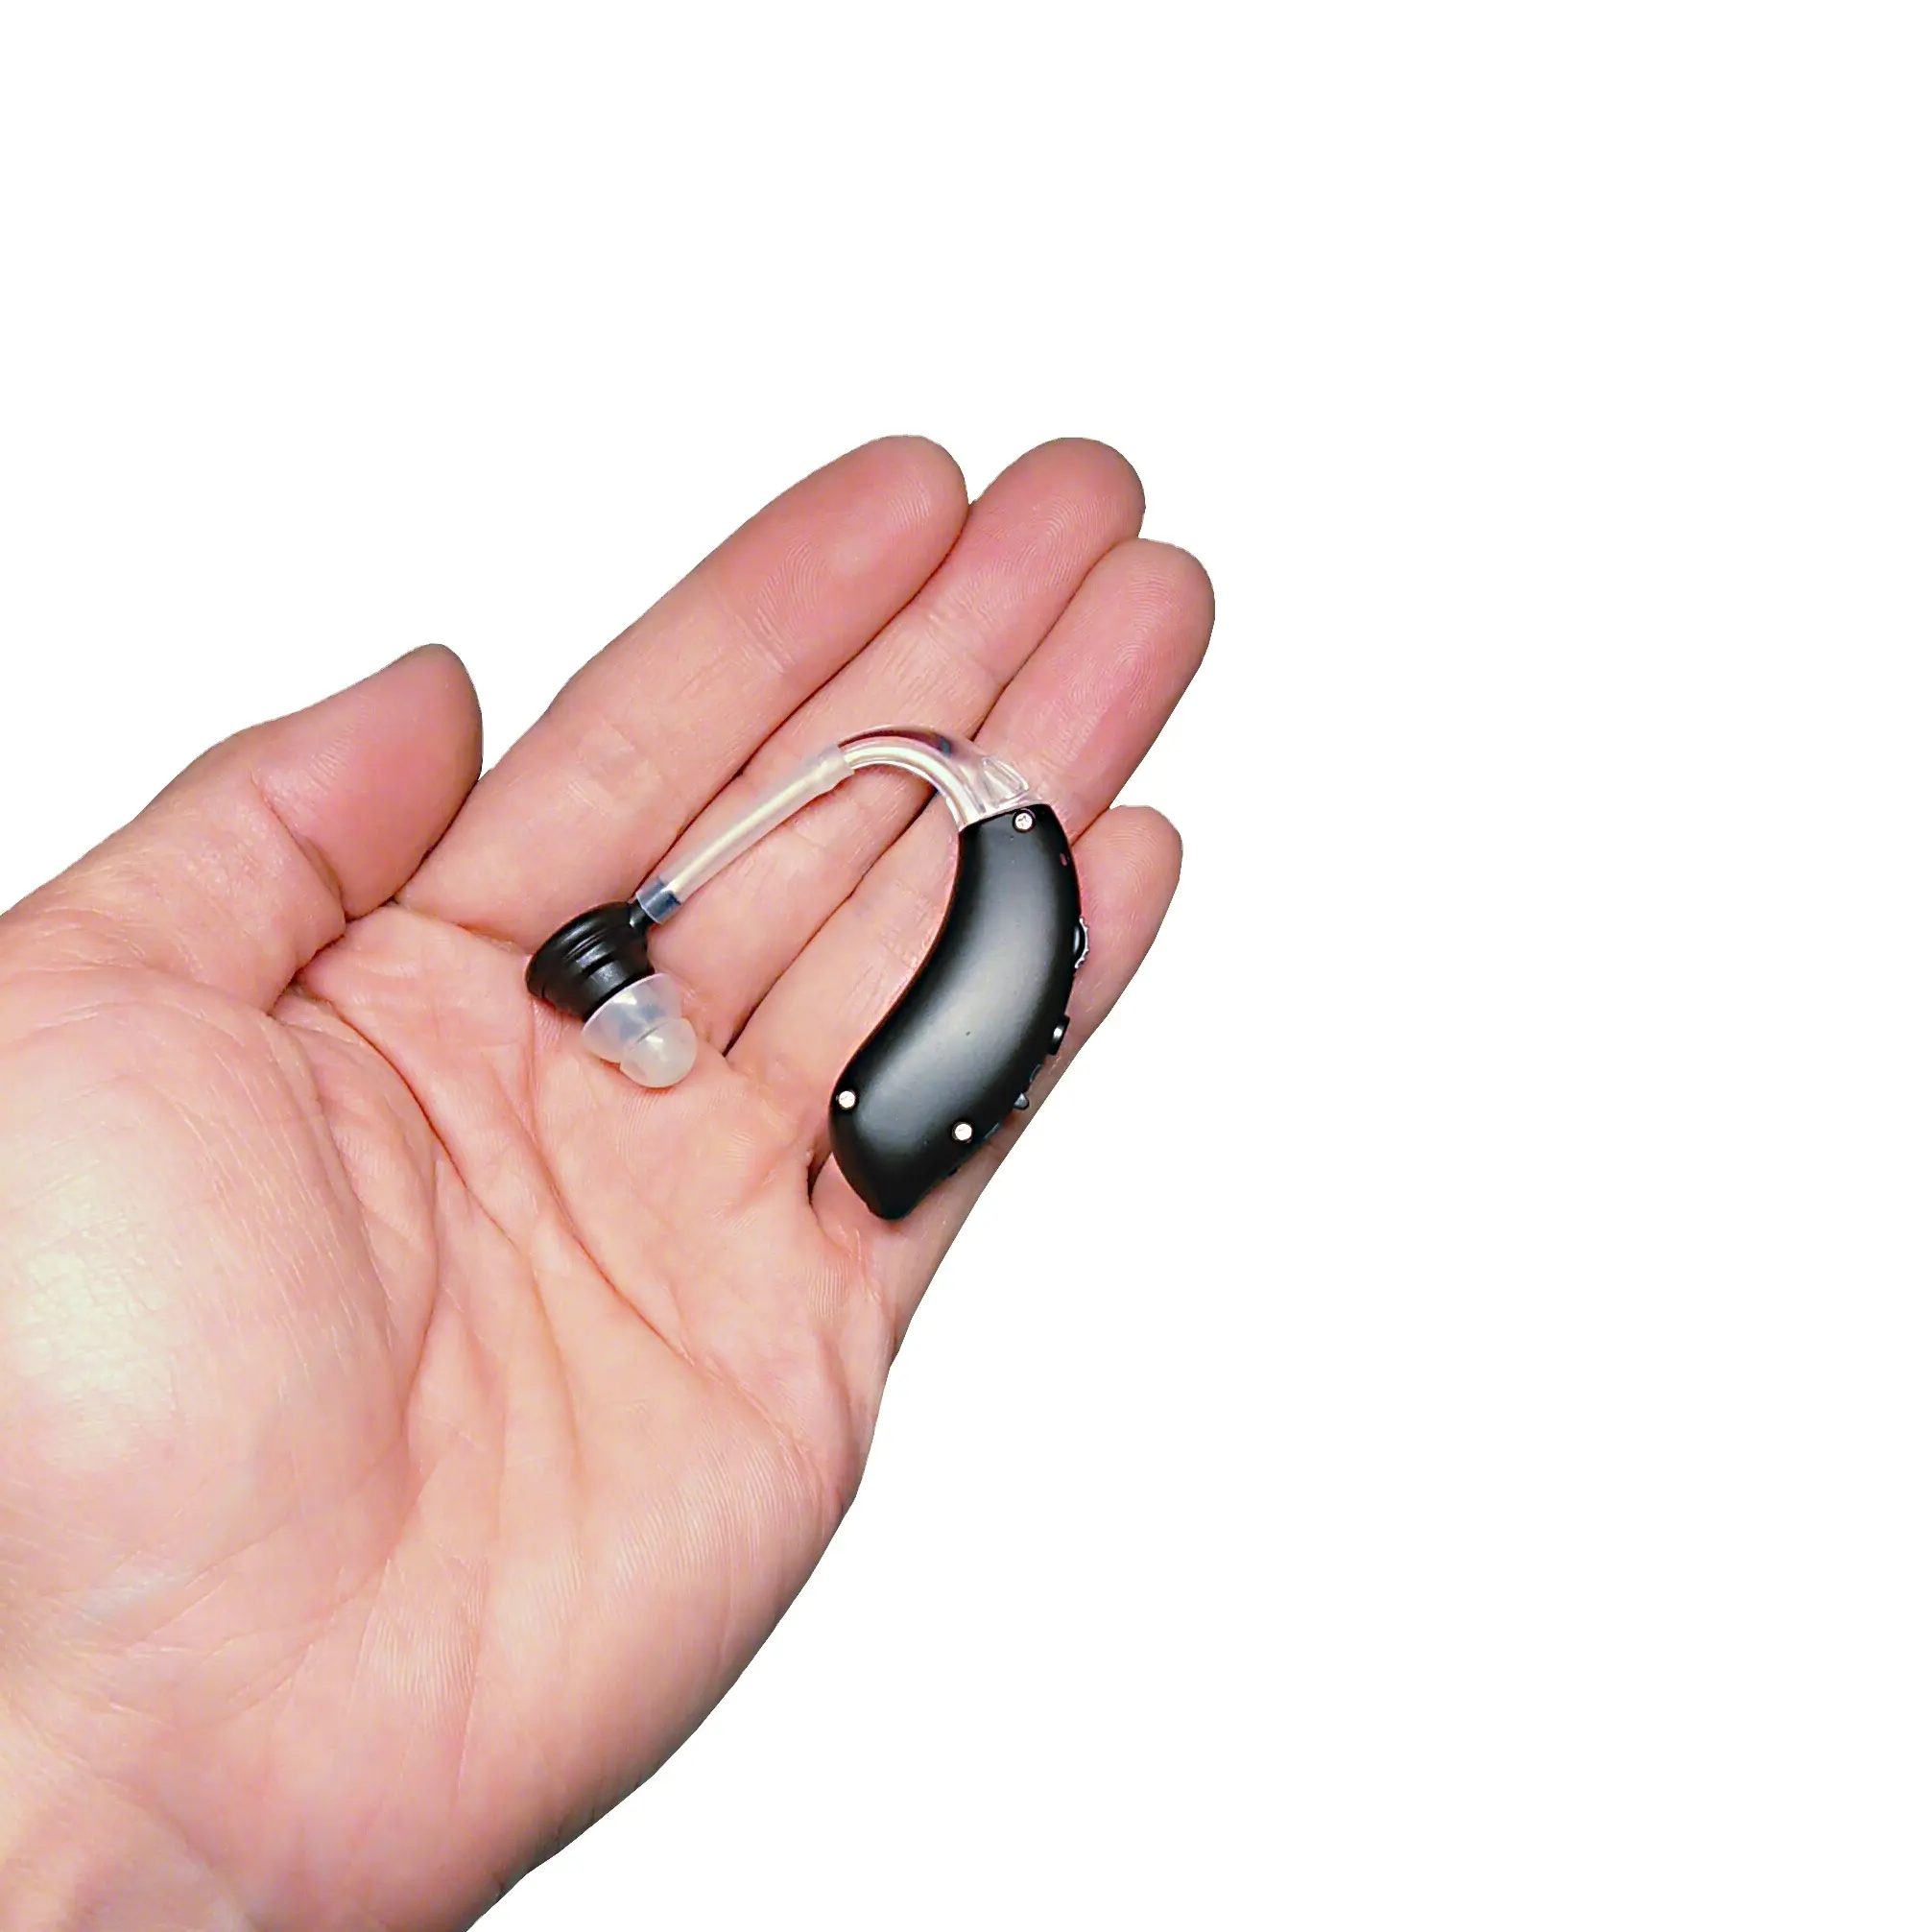 אוזן מכשיר שמיעה נטענת אישי מחיר Heag איידס מגבר לחרשי עם שחור צבע OEM שירות Earsmate